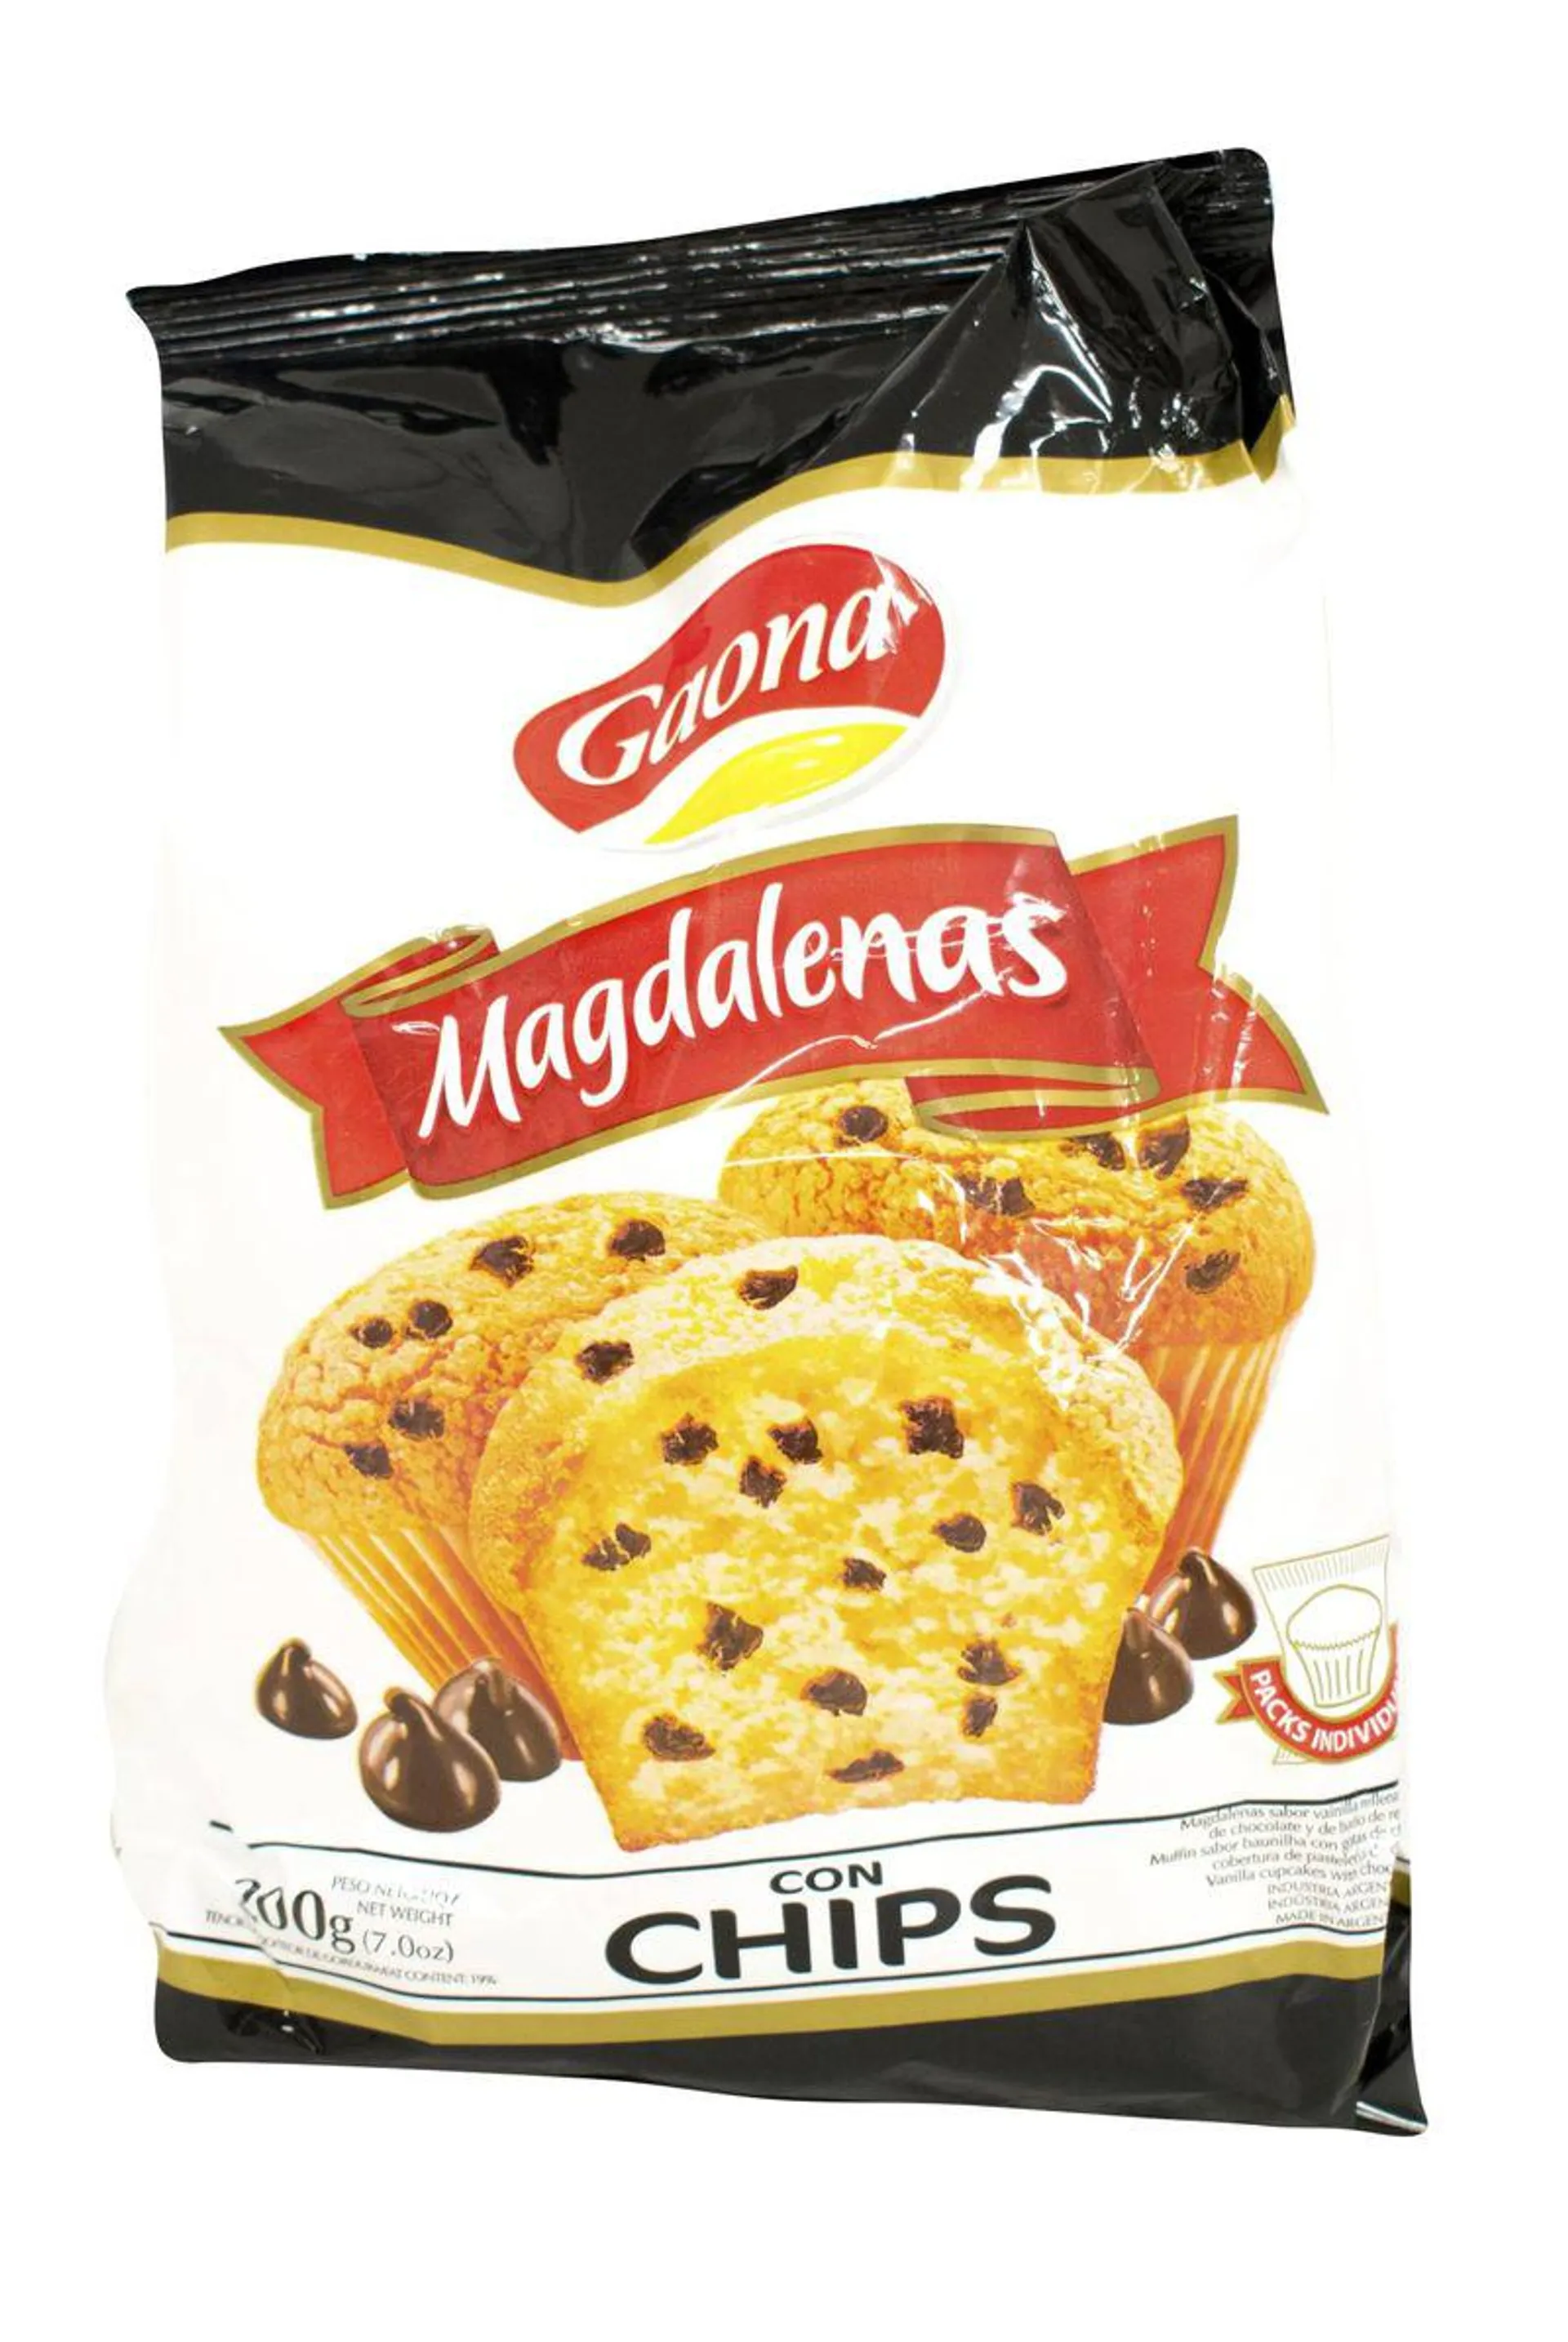 Madalenas Gaona con Chips 180g